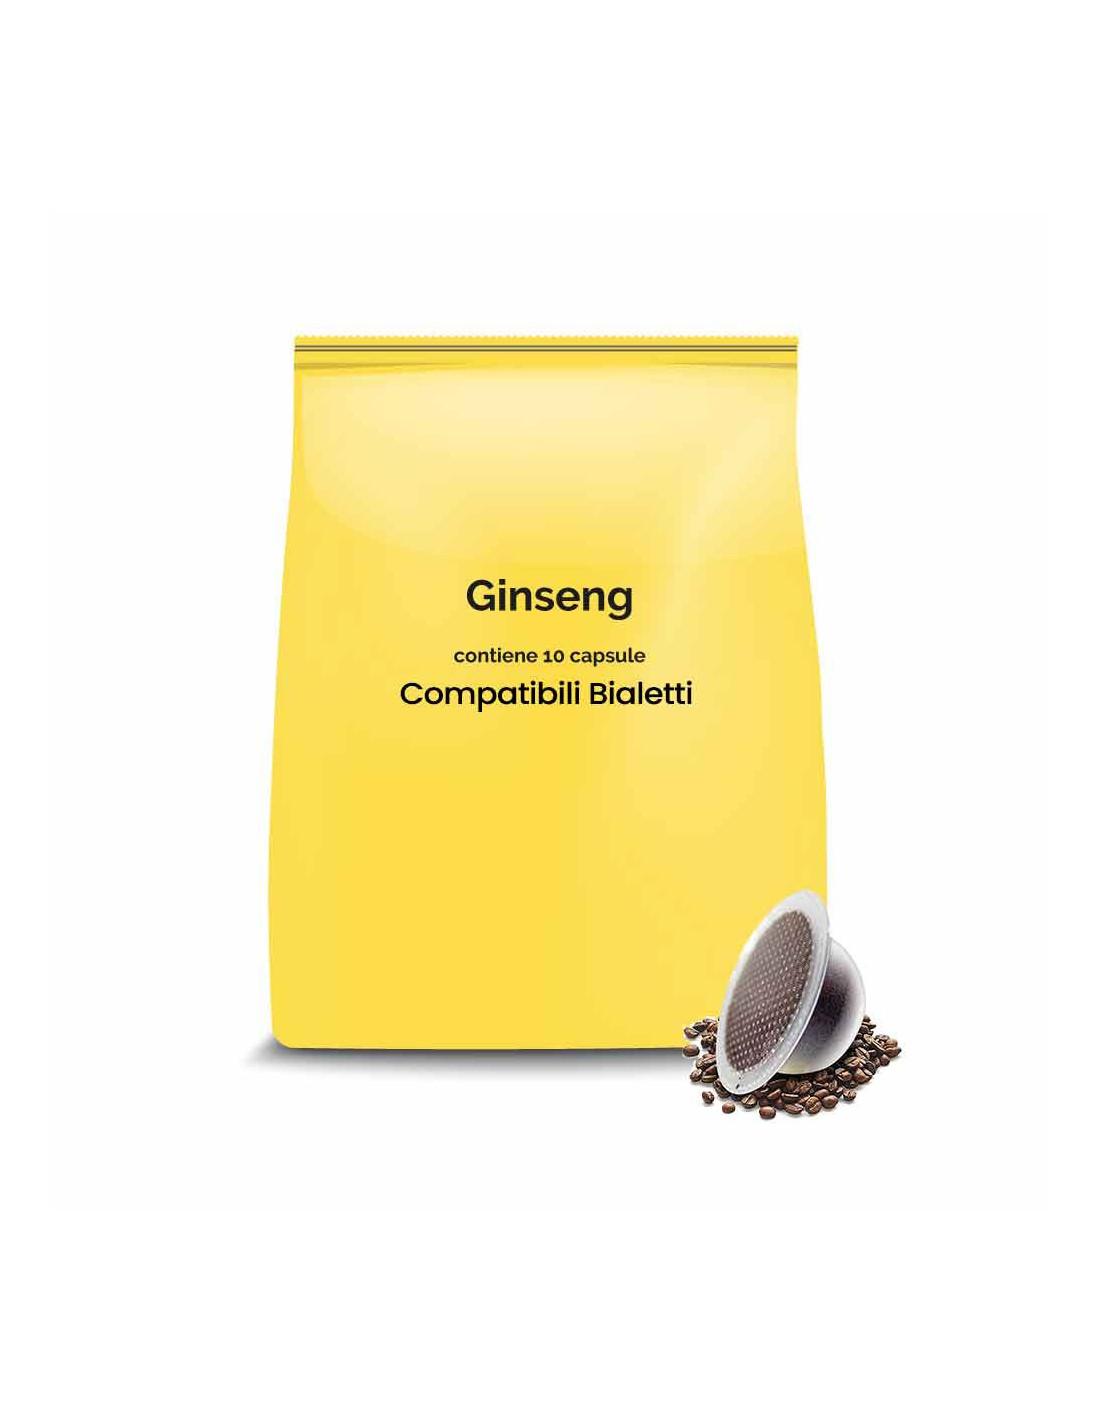 Capsule compatibli bialetti caffè al Ginseng